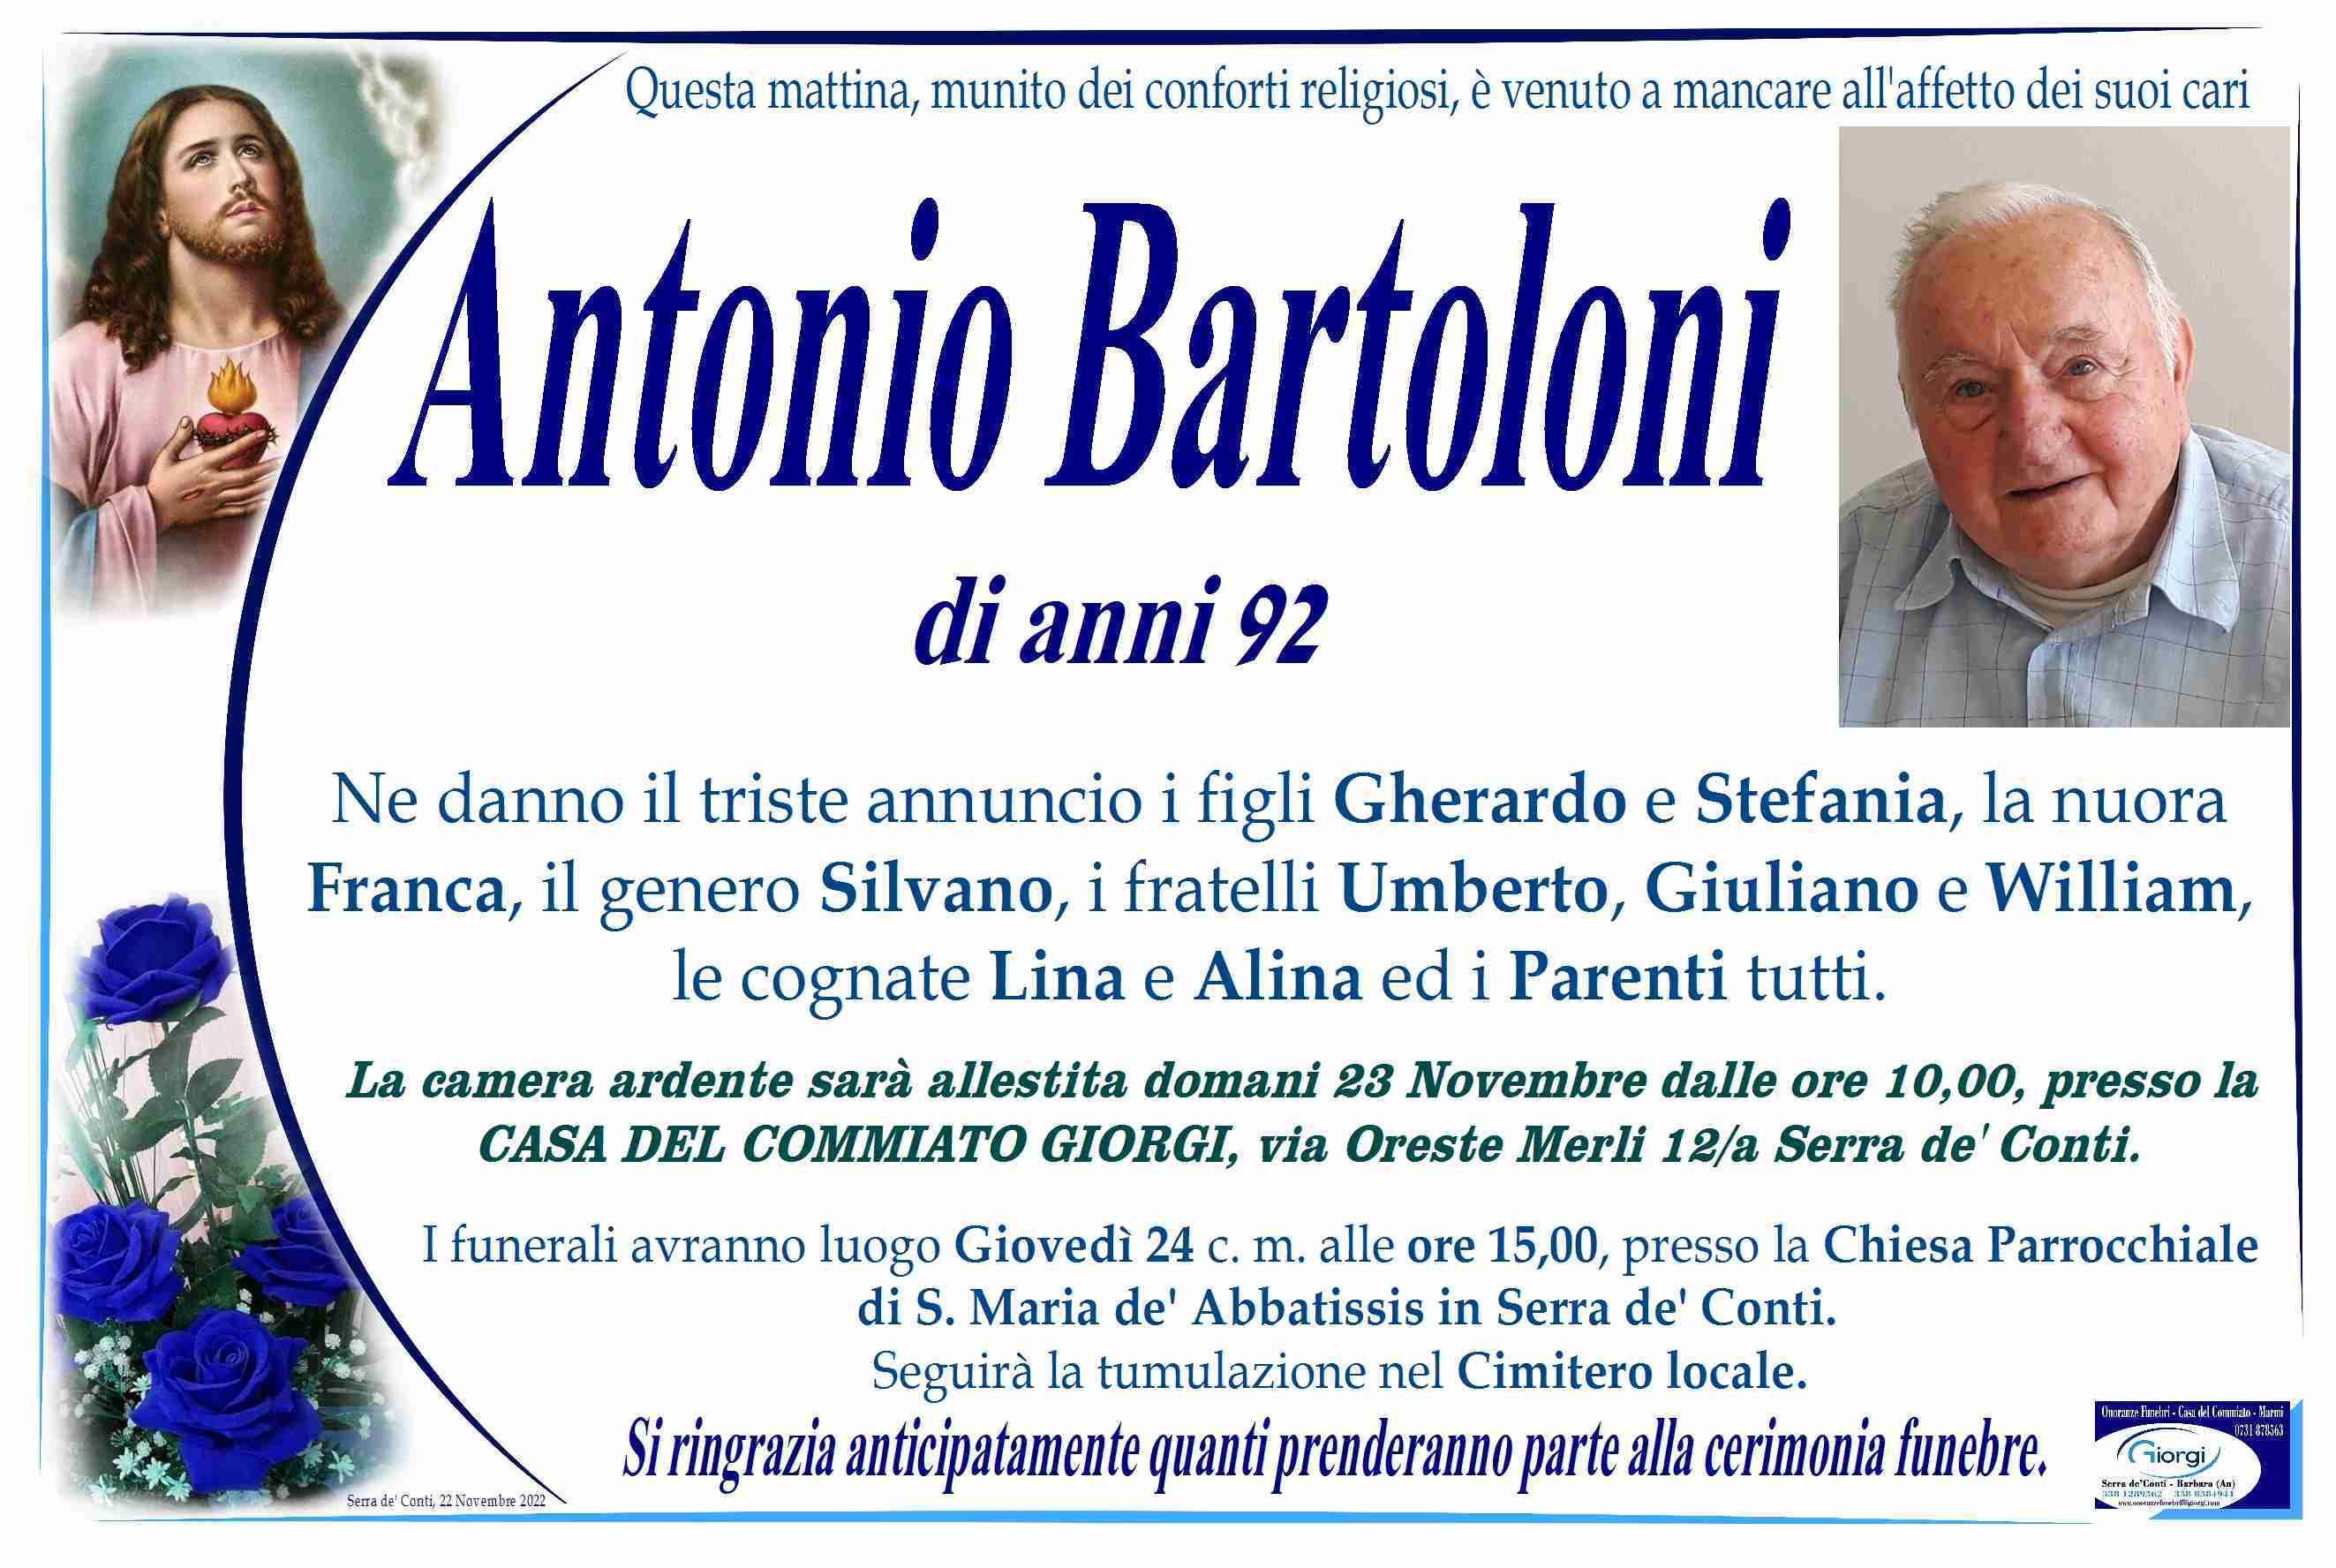 Antonio Bartoloni